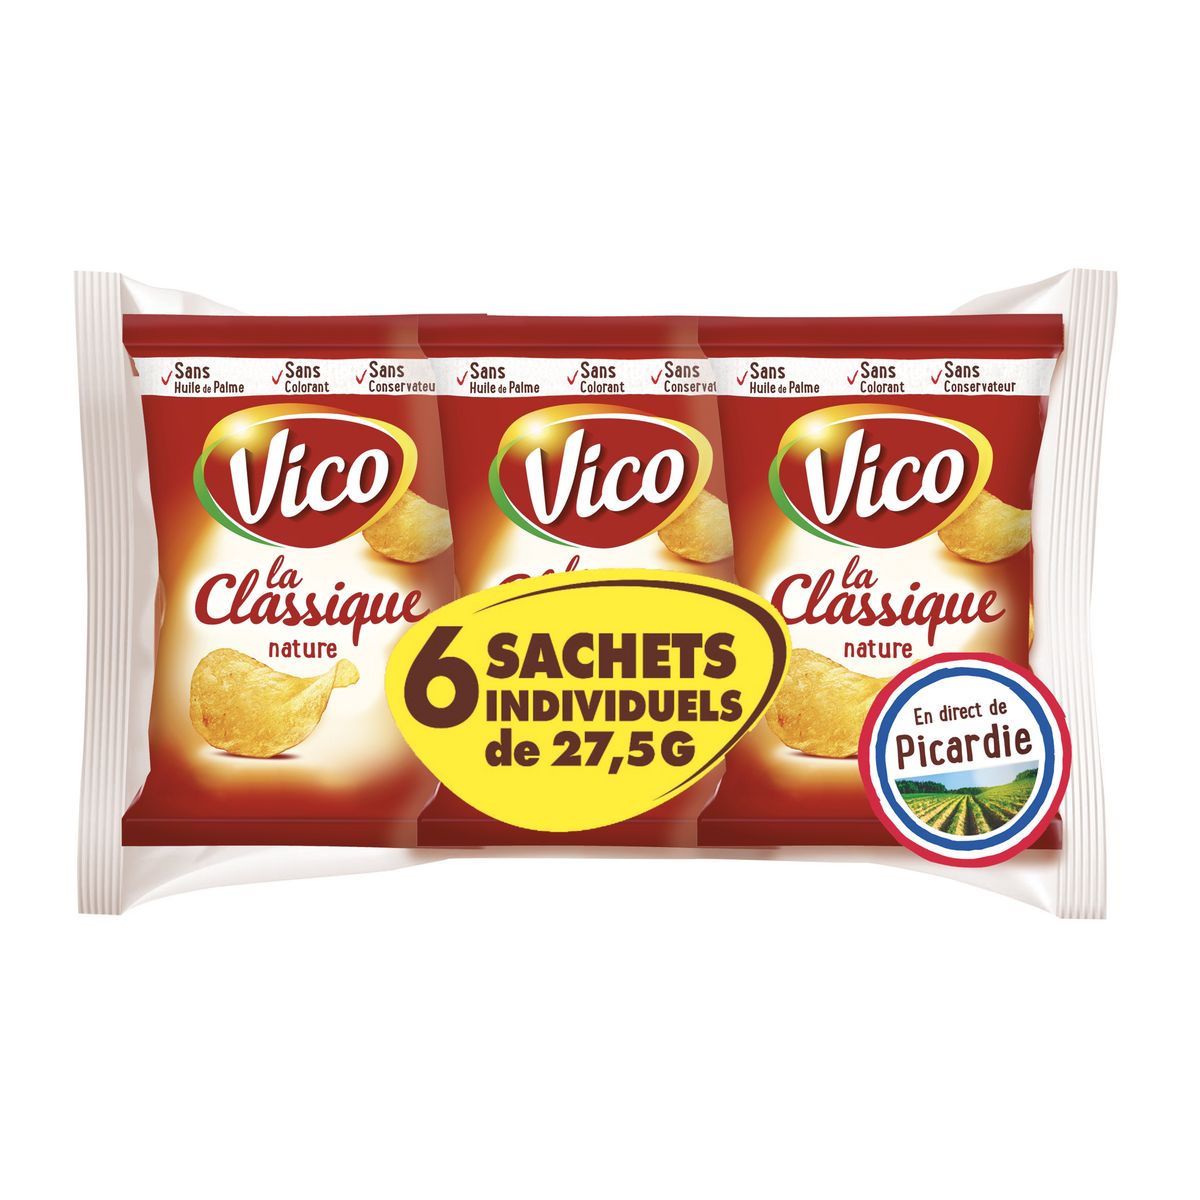 VICO Chips la Classique nature en sachets individuels lot de 6 6x27,5g